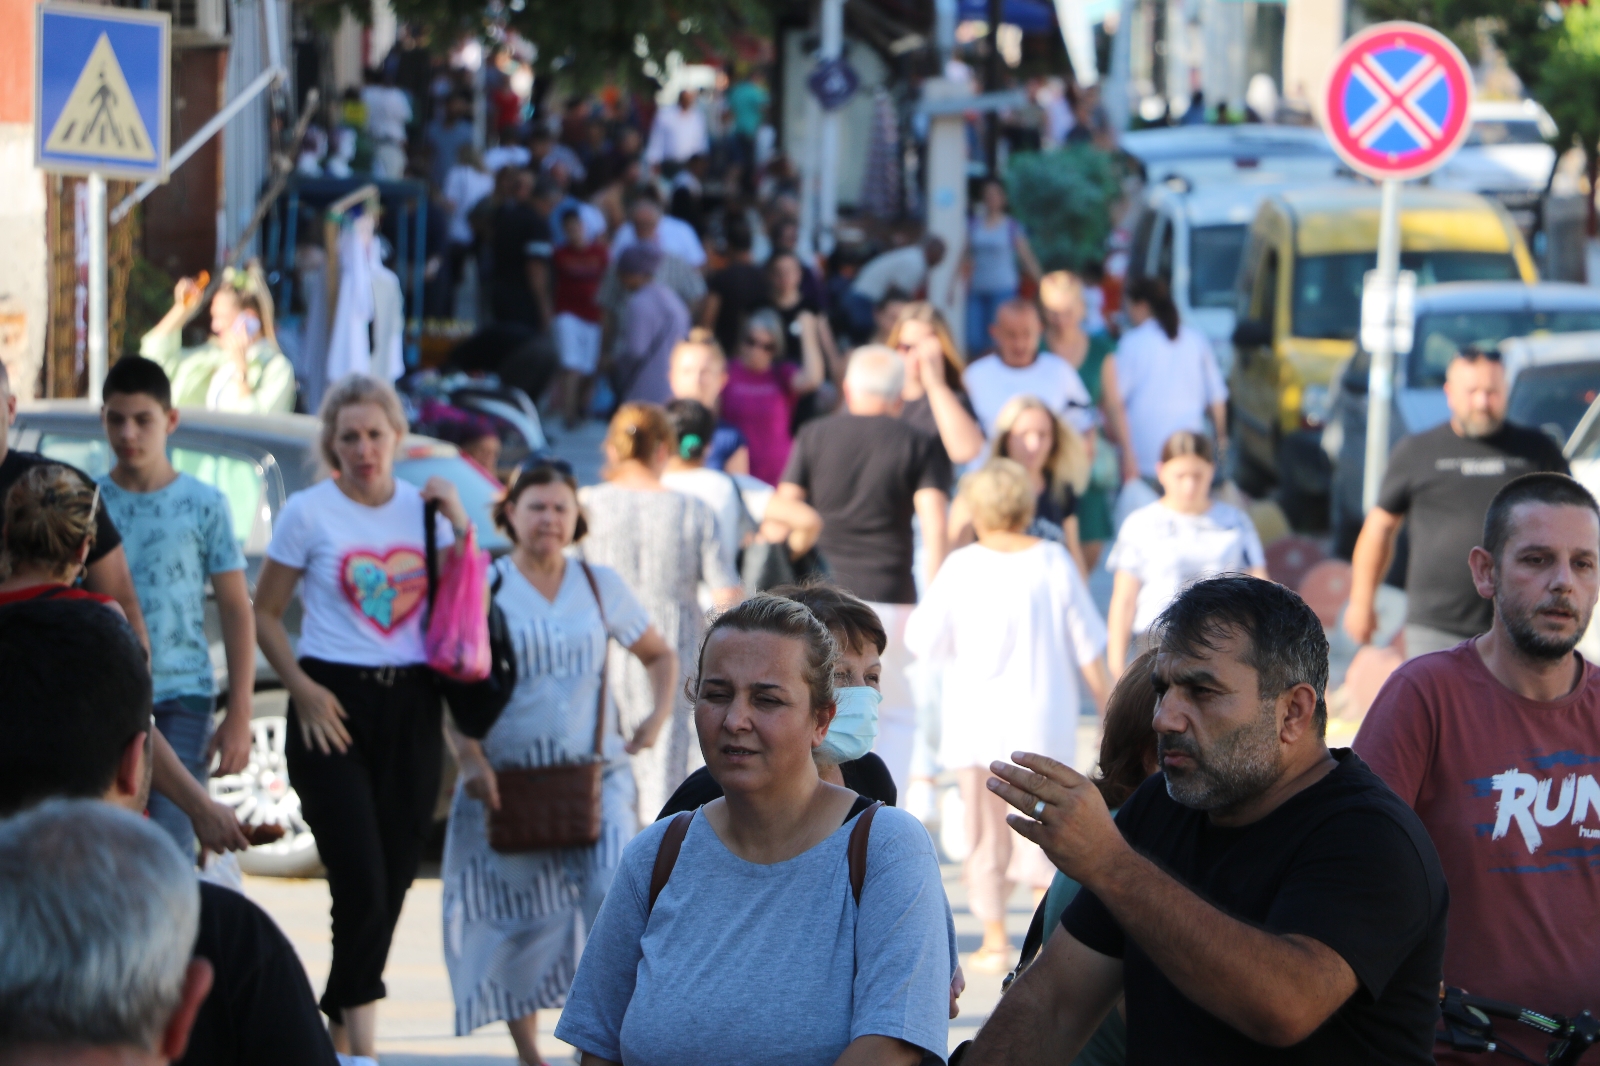 Edirne’ye akın eden Bulgarlar bin Euro harcıyor